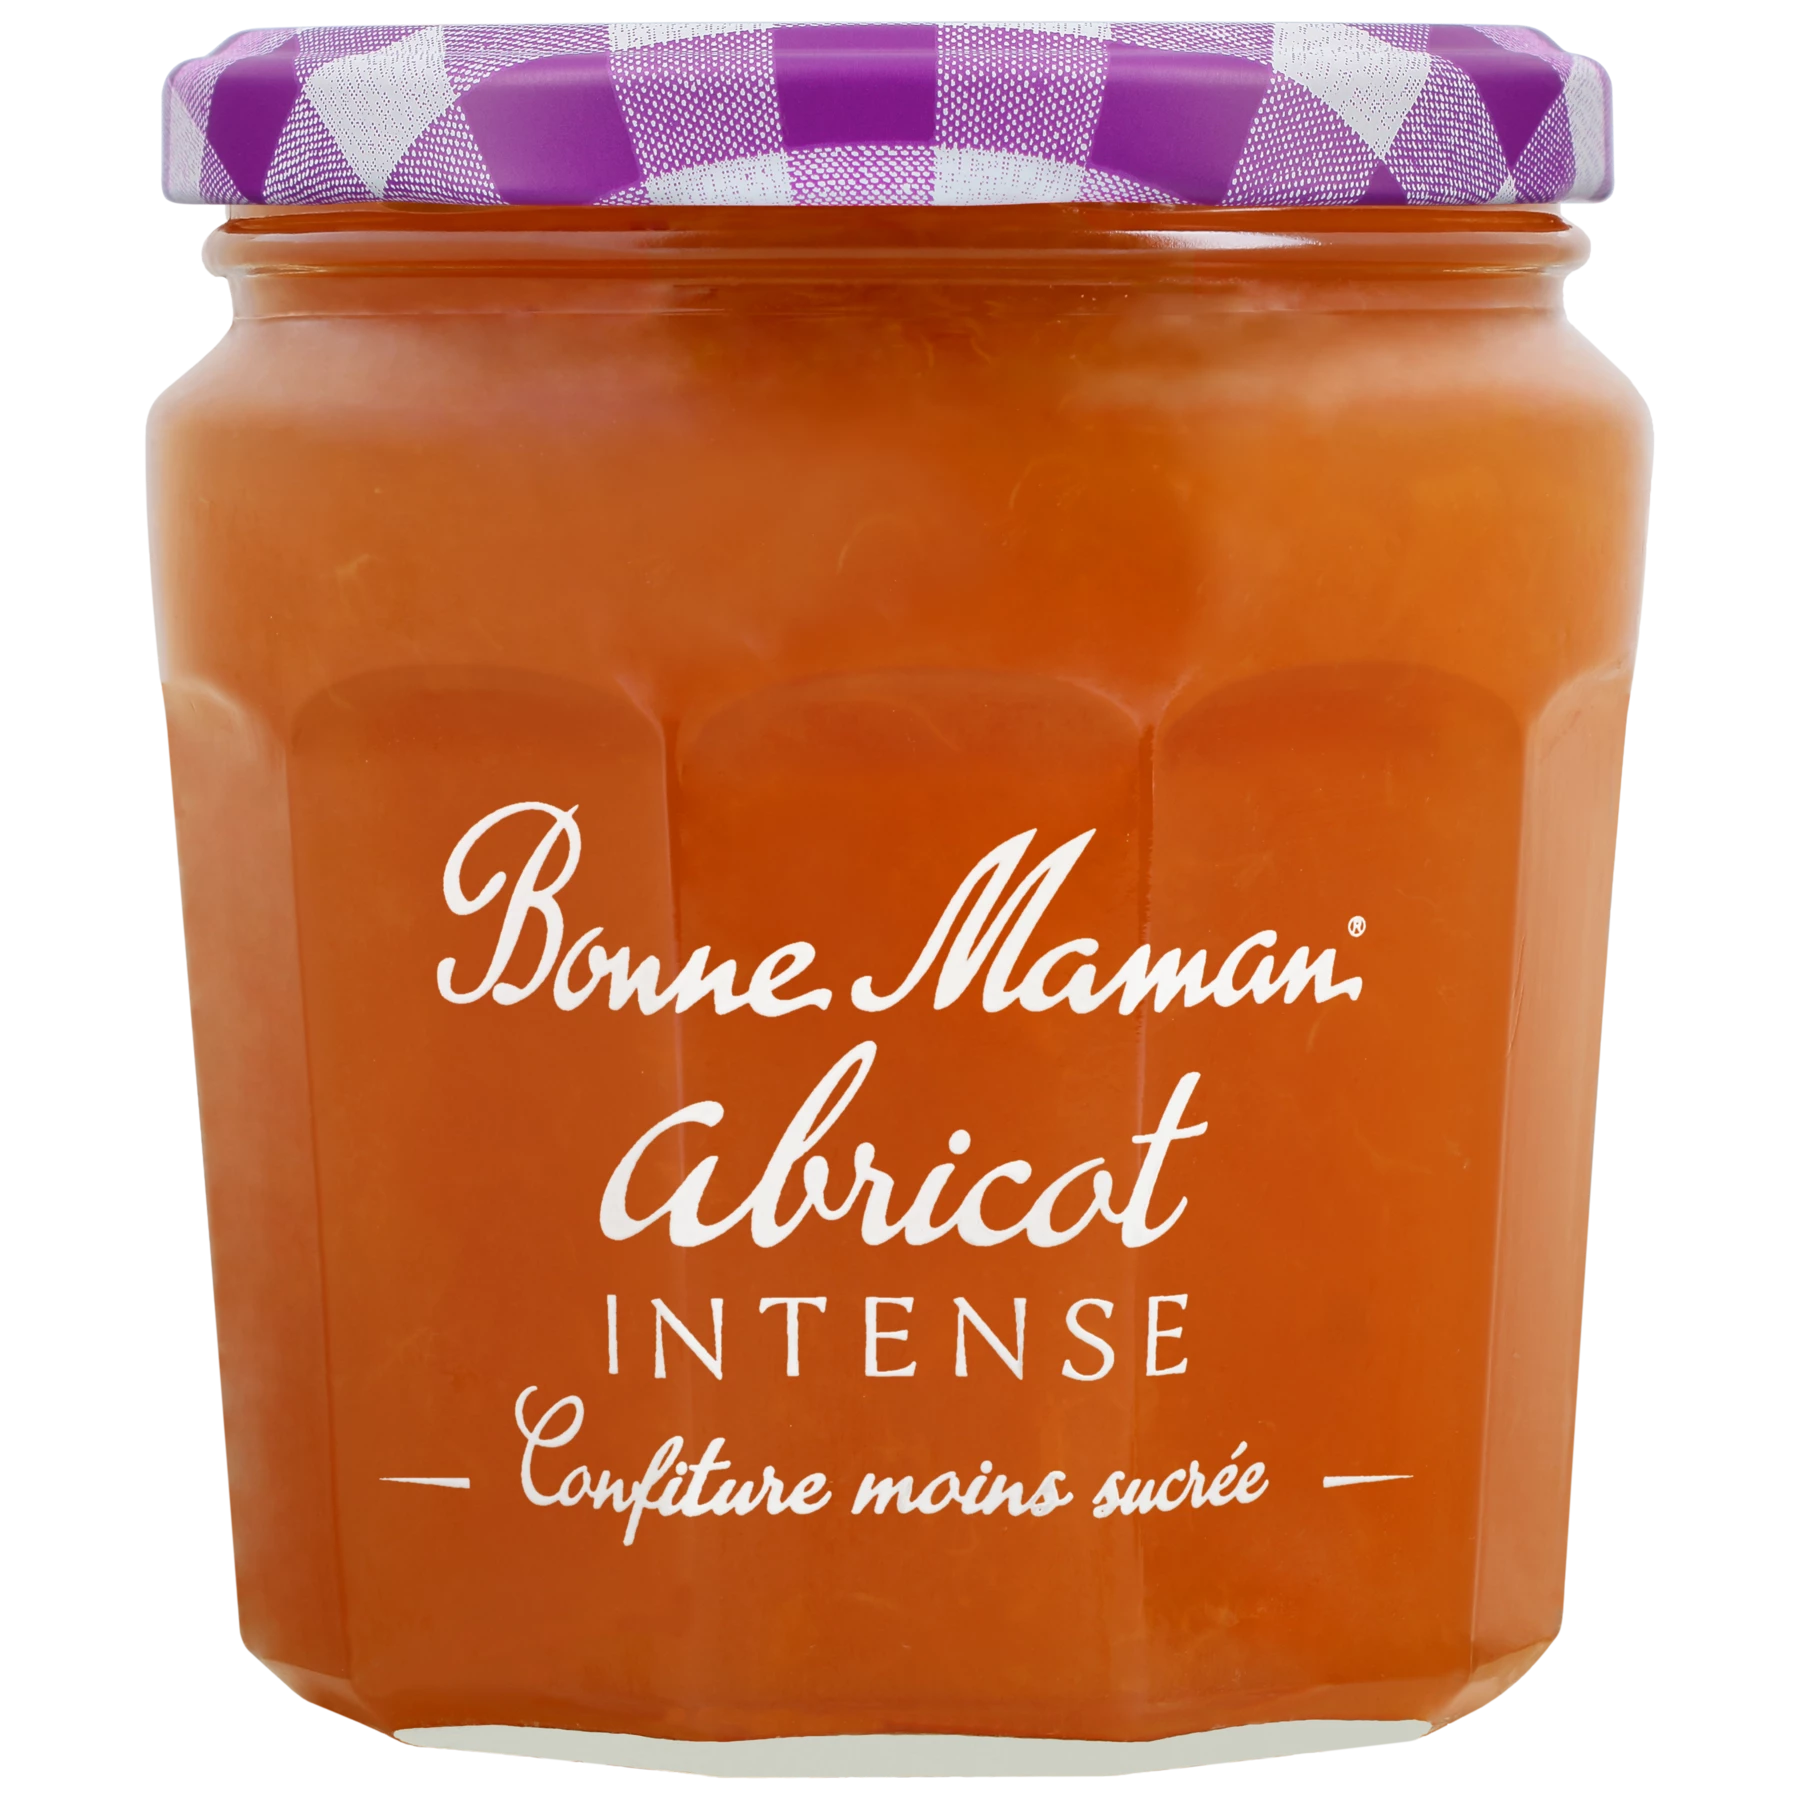 Intense apricot jam 335g - BONNE MAMAN